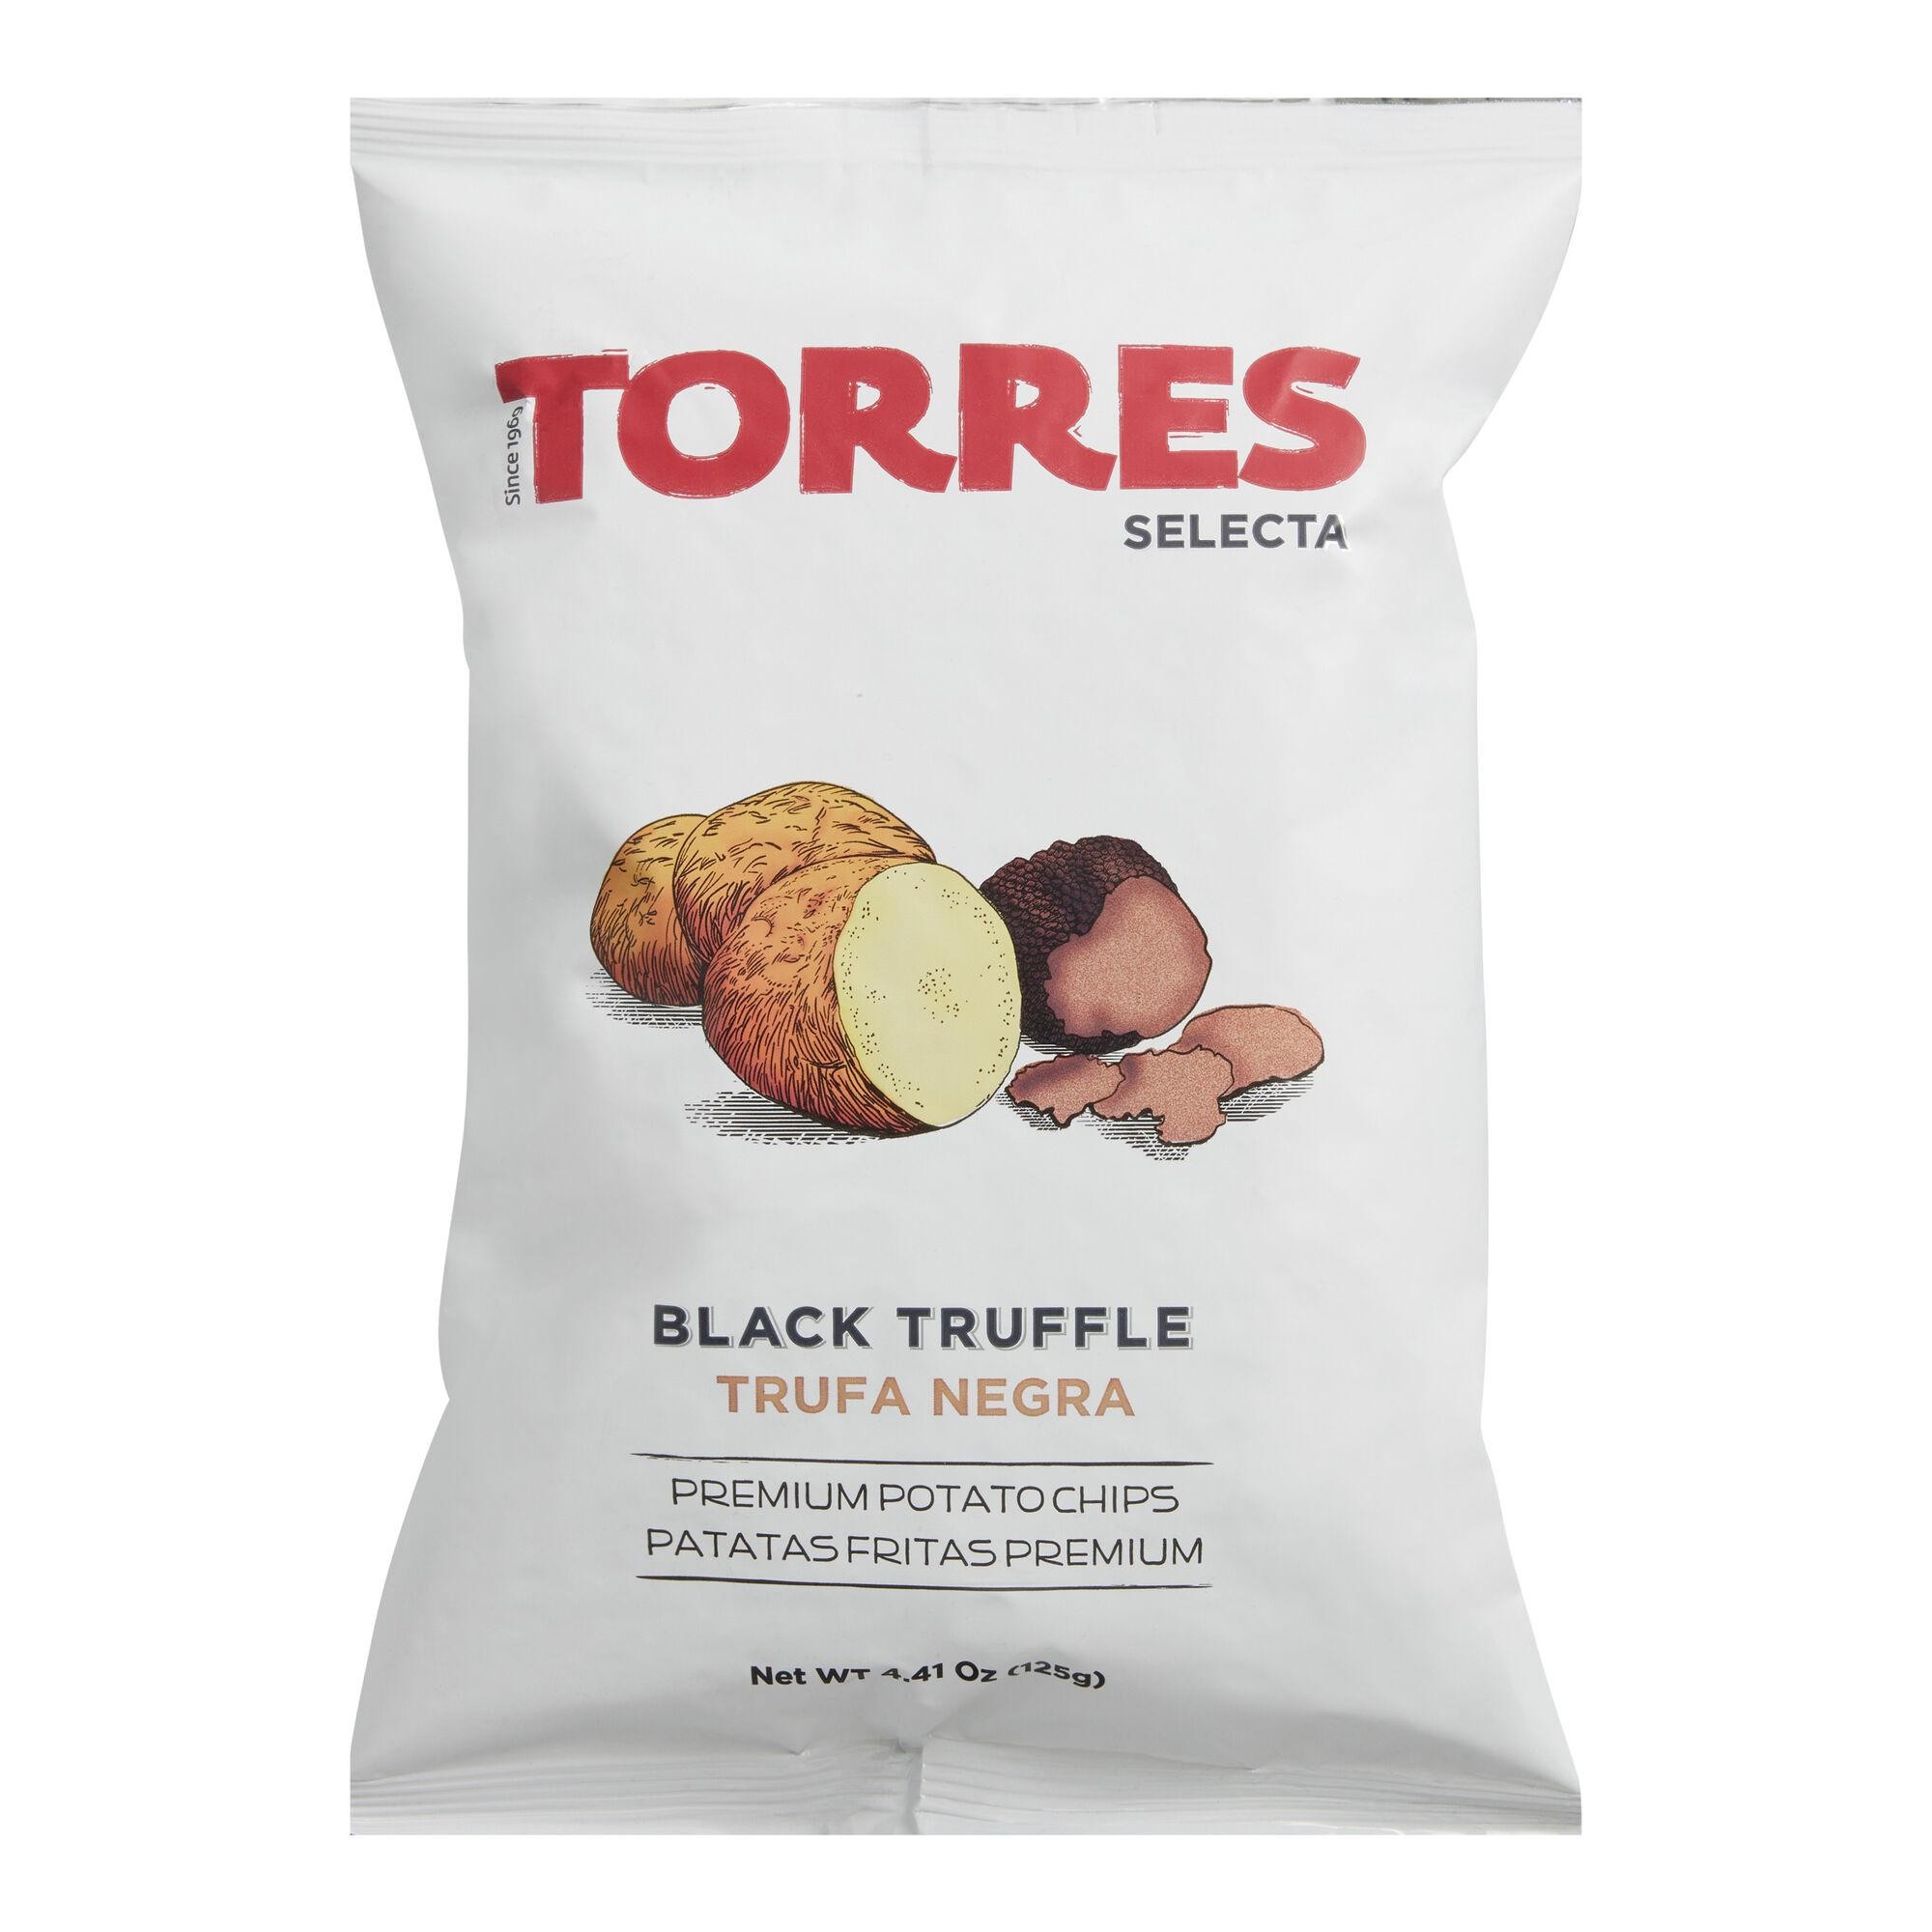 Torres Potatoe Truffle